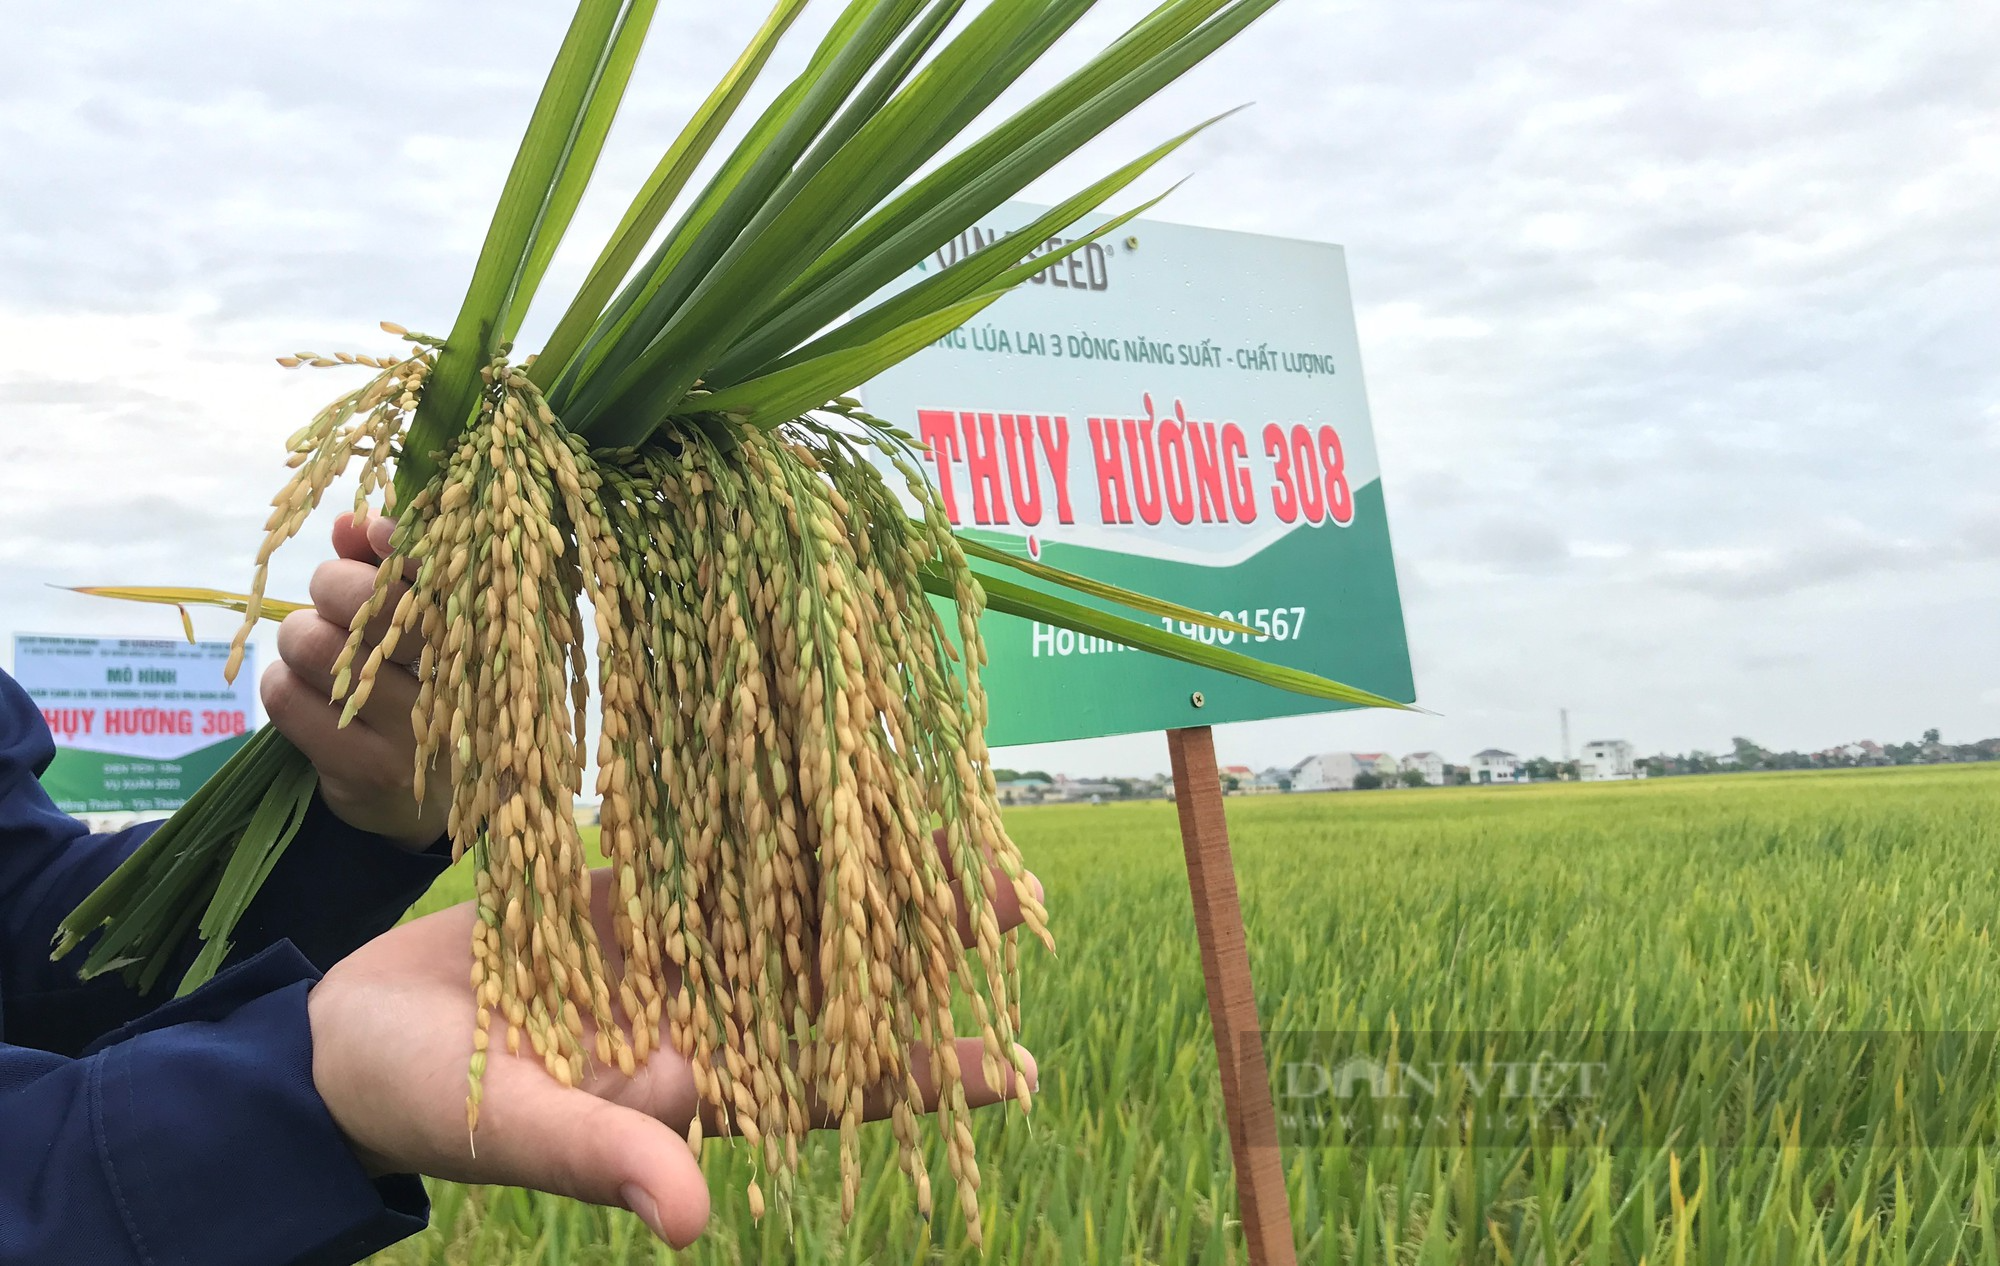 Thụy Hương 308 của Vinaseed khiến nông dân ở huyện Yên Thành, tỉnh Nghệ An bất ngờ khi đẻ khỏe, bông dài, hạt chắc - Ảnh 5.